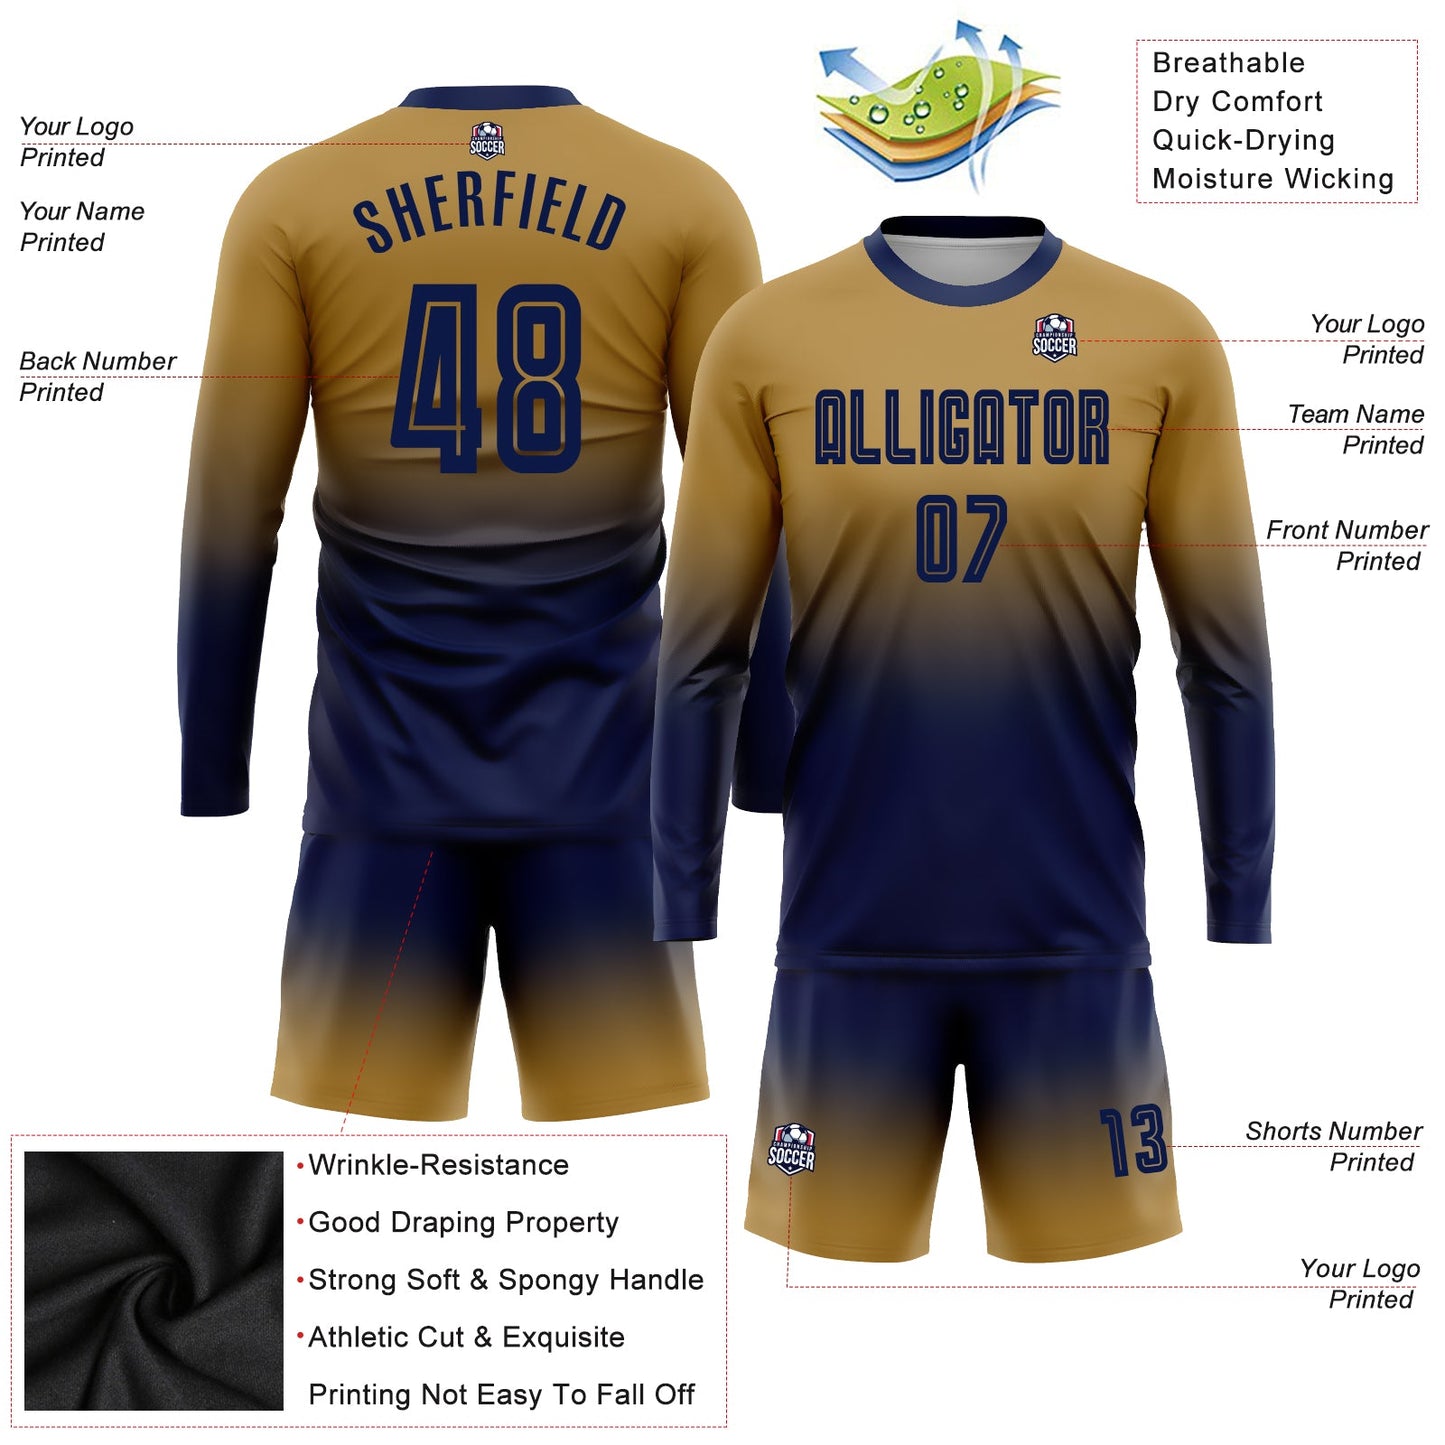 Maillot d'uniforme de football à manches longues, personnalisé, vieux or, marine, sublimation, mode décoloré